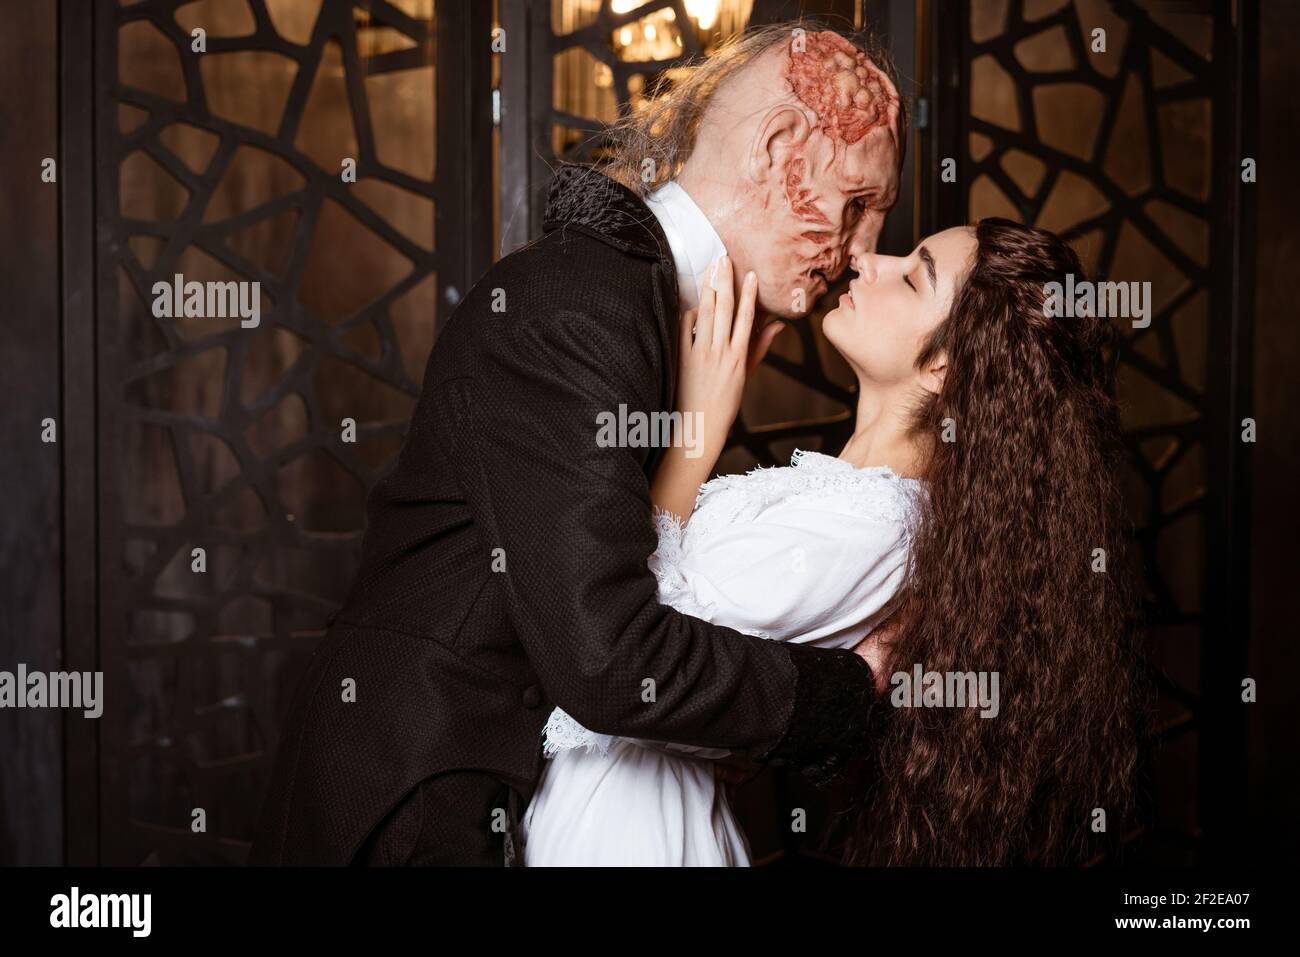 un brutto uomo in un cappotto bacia un giovane bello brunette in un peignoir bianco - cosplay per il musical Il Fantasma dell'Opera Foto Stock